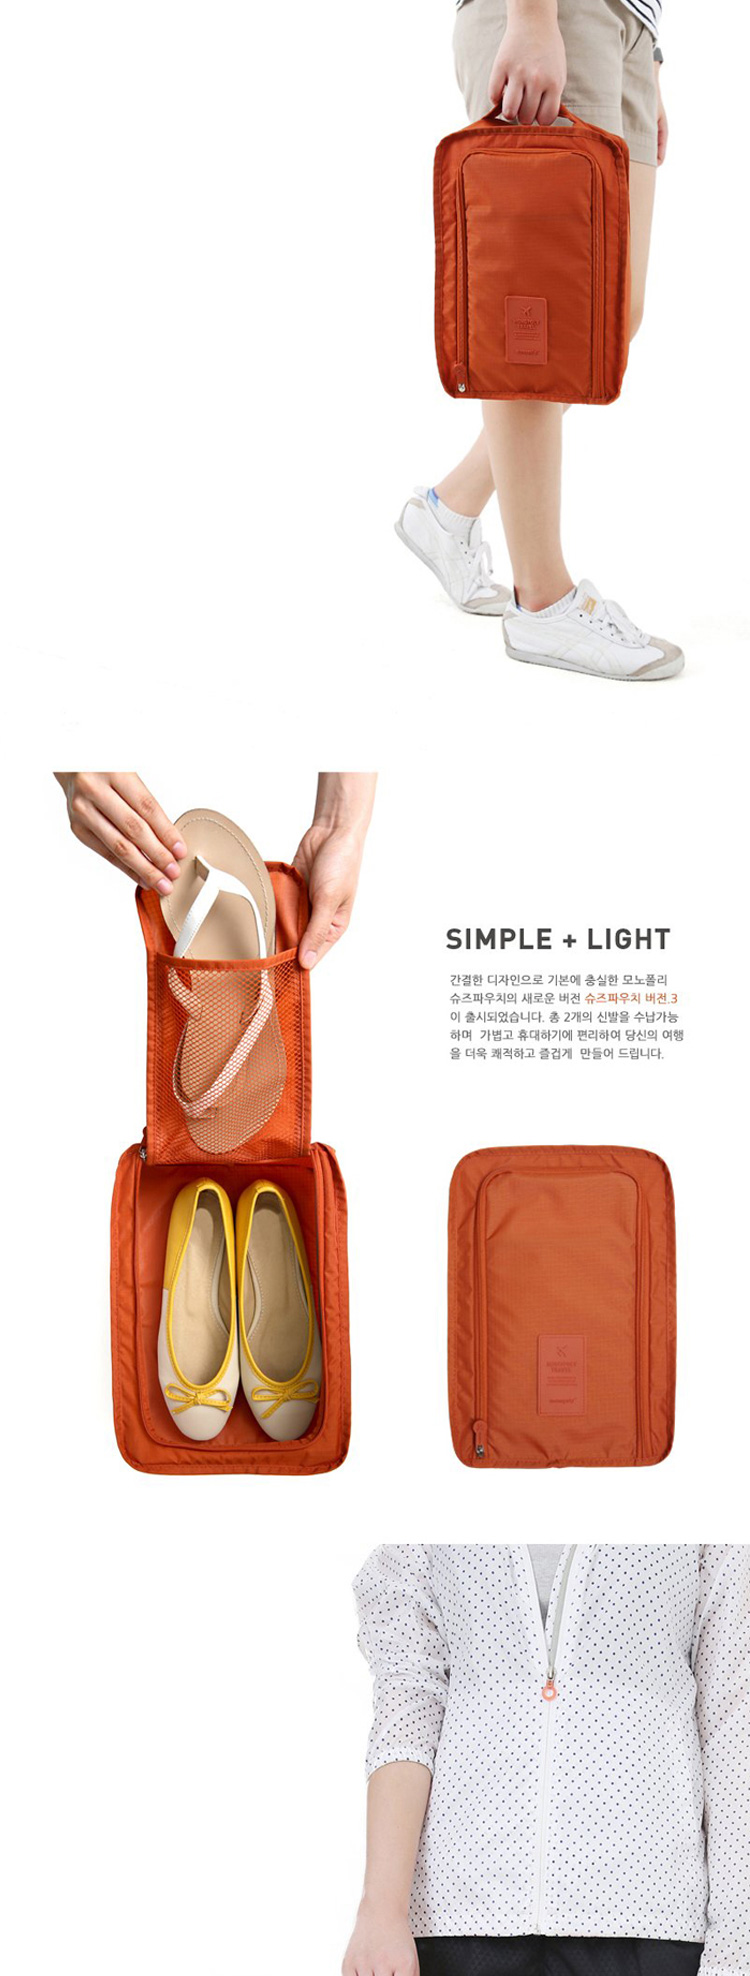 韩版旅行用品高品质防水双层收纳鞋袋鞋盒 旅行收纳袋升级款VER.35